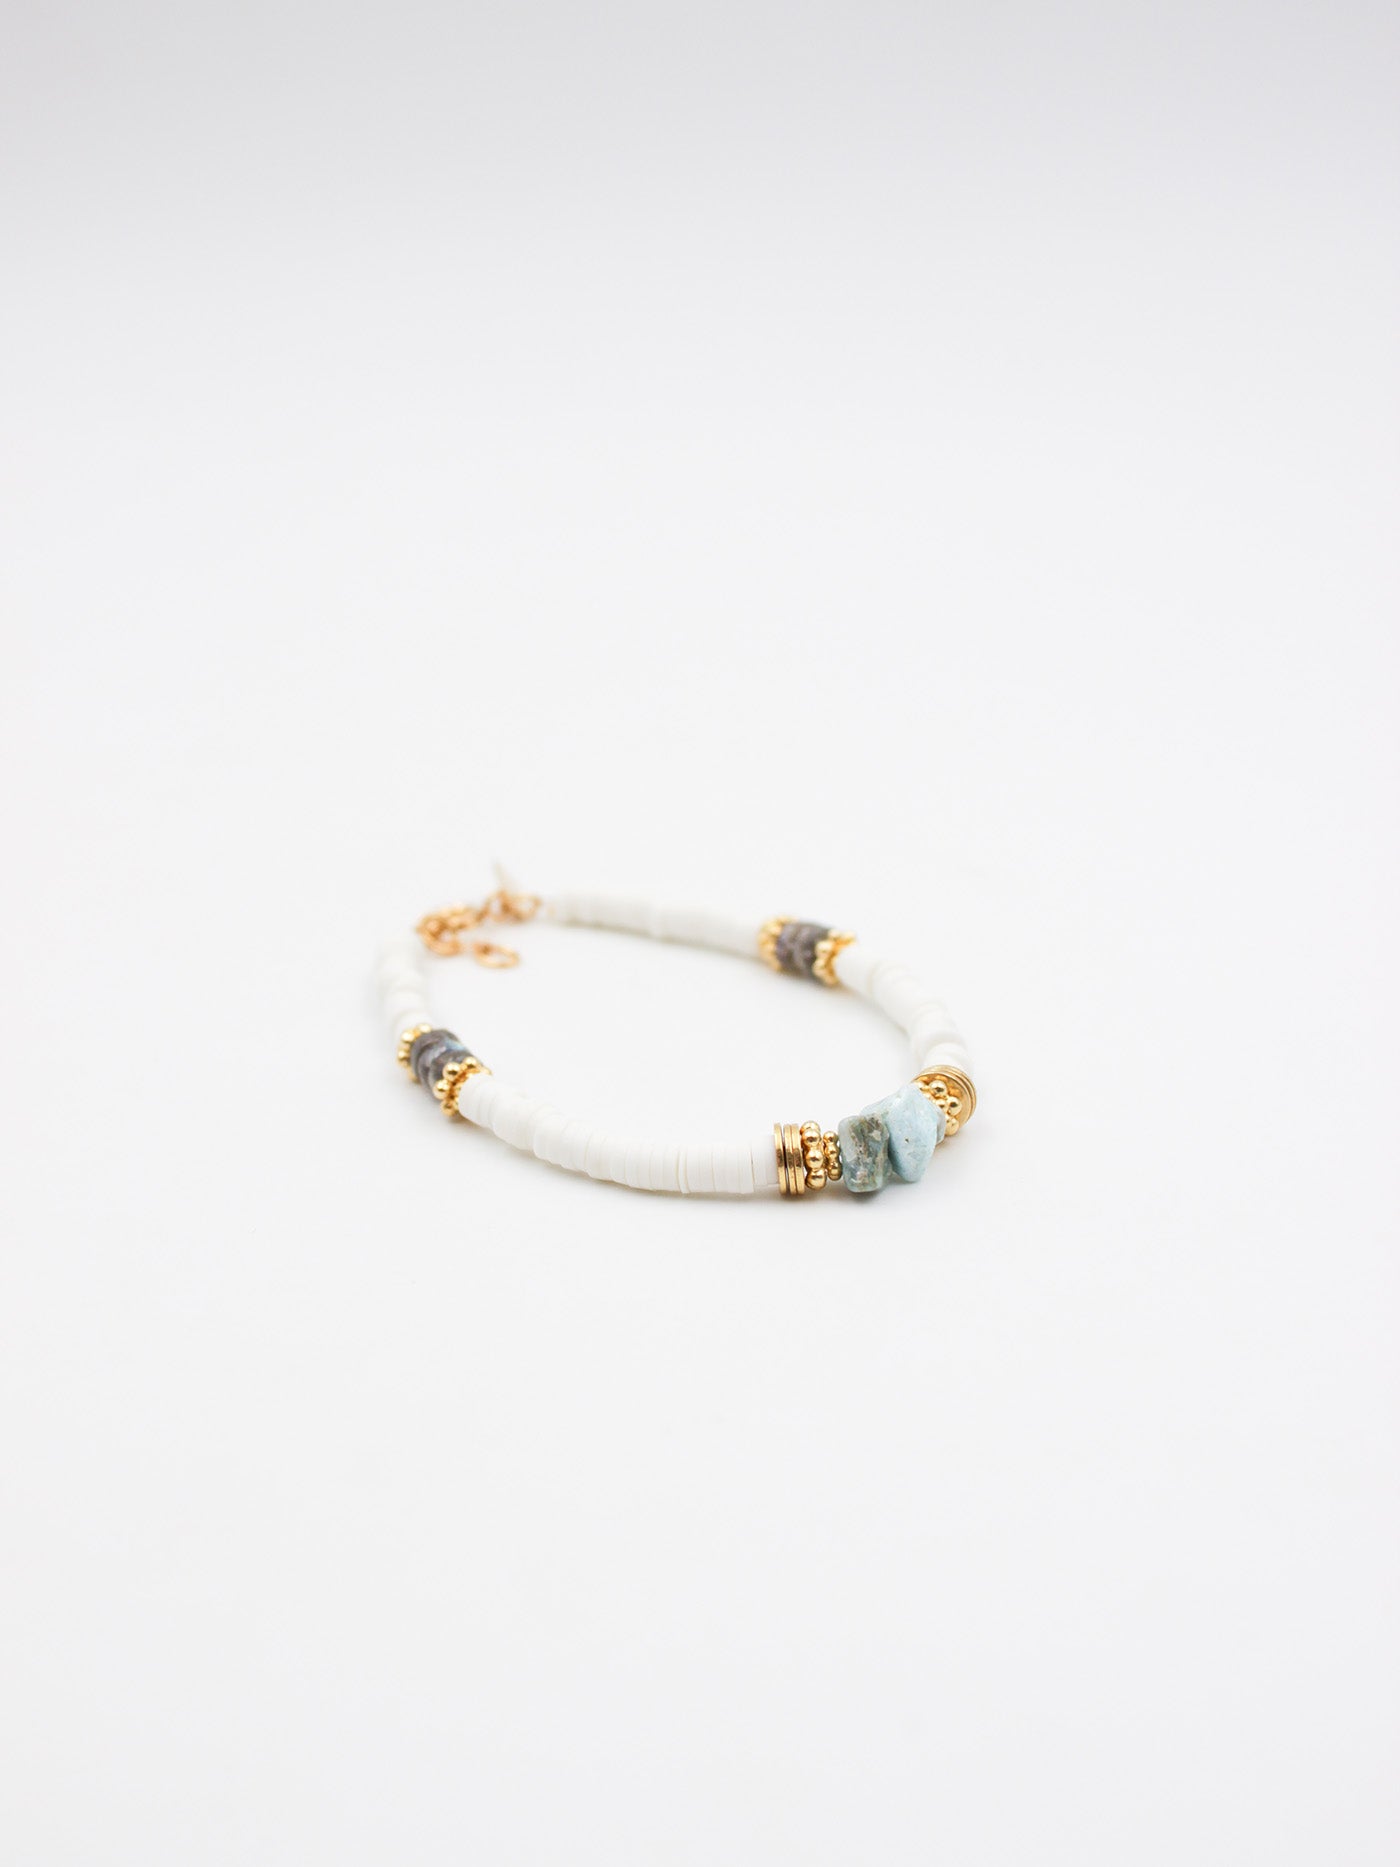 Bracelet gomme blanc - gamme VANESSA - laiton doré à l’or fin - pierres naturelles : labradorite, larimar - nouvelle collection 23FW - l’Atelier des Dames